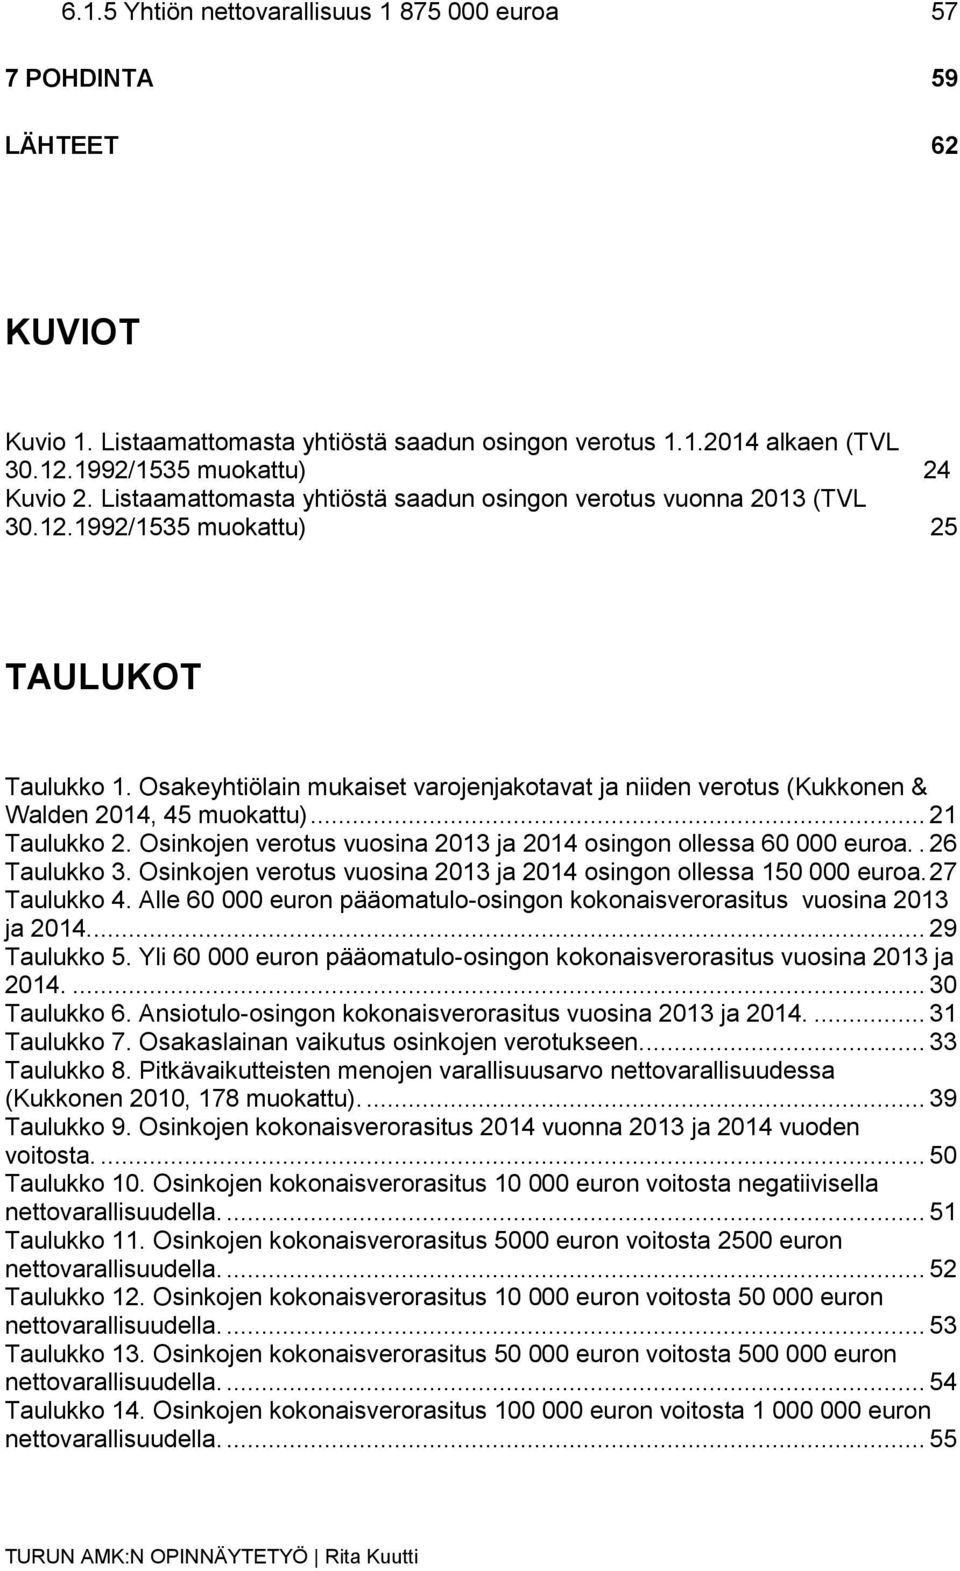 Osakeyhtiölain mukaiset varojenjakotavat ja niiden verotus (Kukkonen & Walden 2014, 45 muokattu)... 21 Taulukko 2. Osinkojen verotus vuosina 2013 ja 2014 osingon ollessa 60 000 euroa.. 26 Taulukko 3.